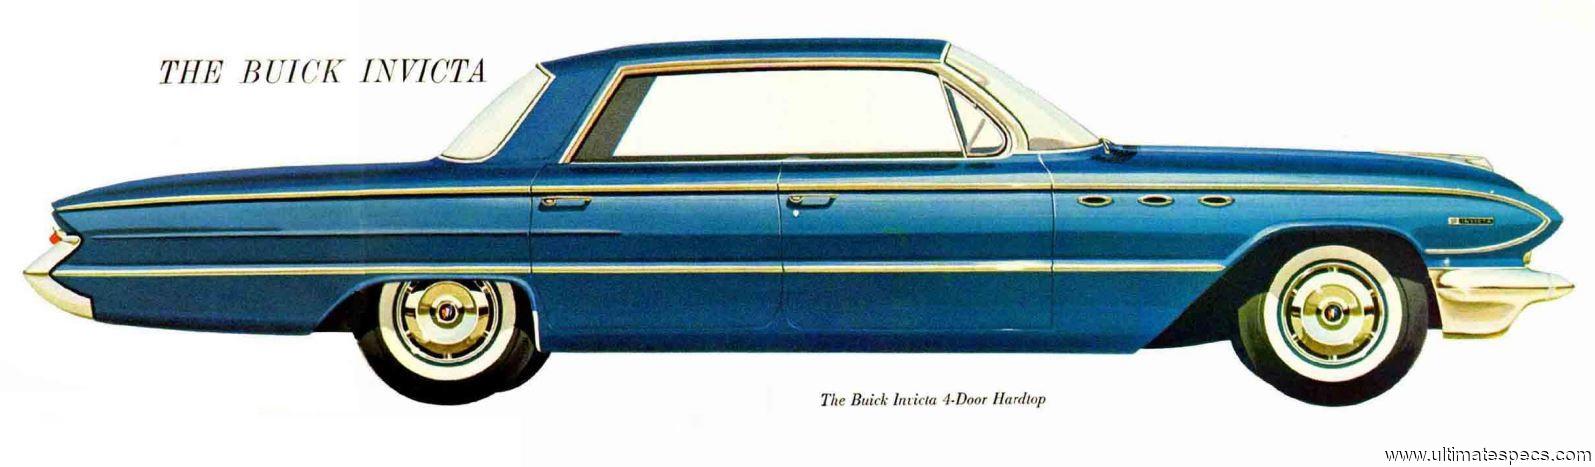 Buick Invicta 4-Door Hardtop 1961